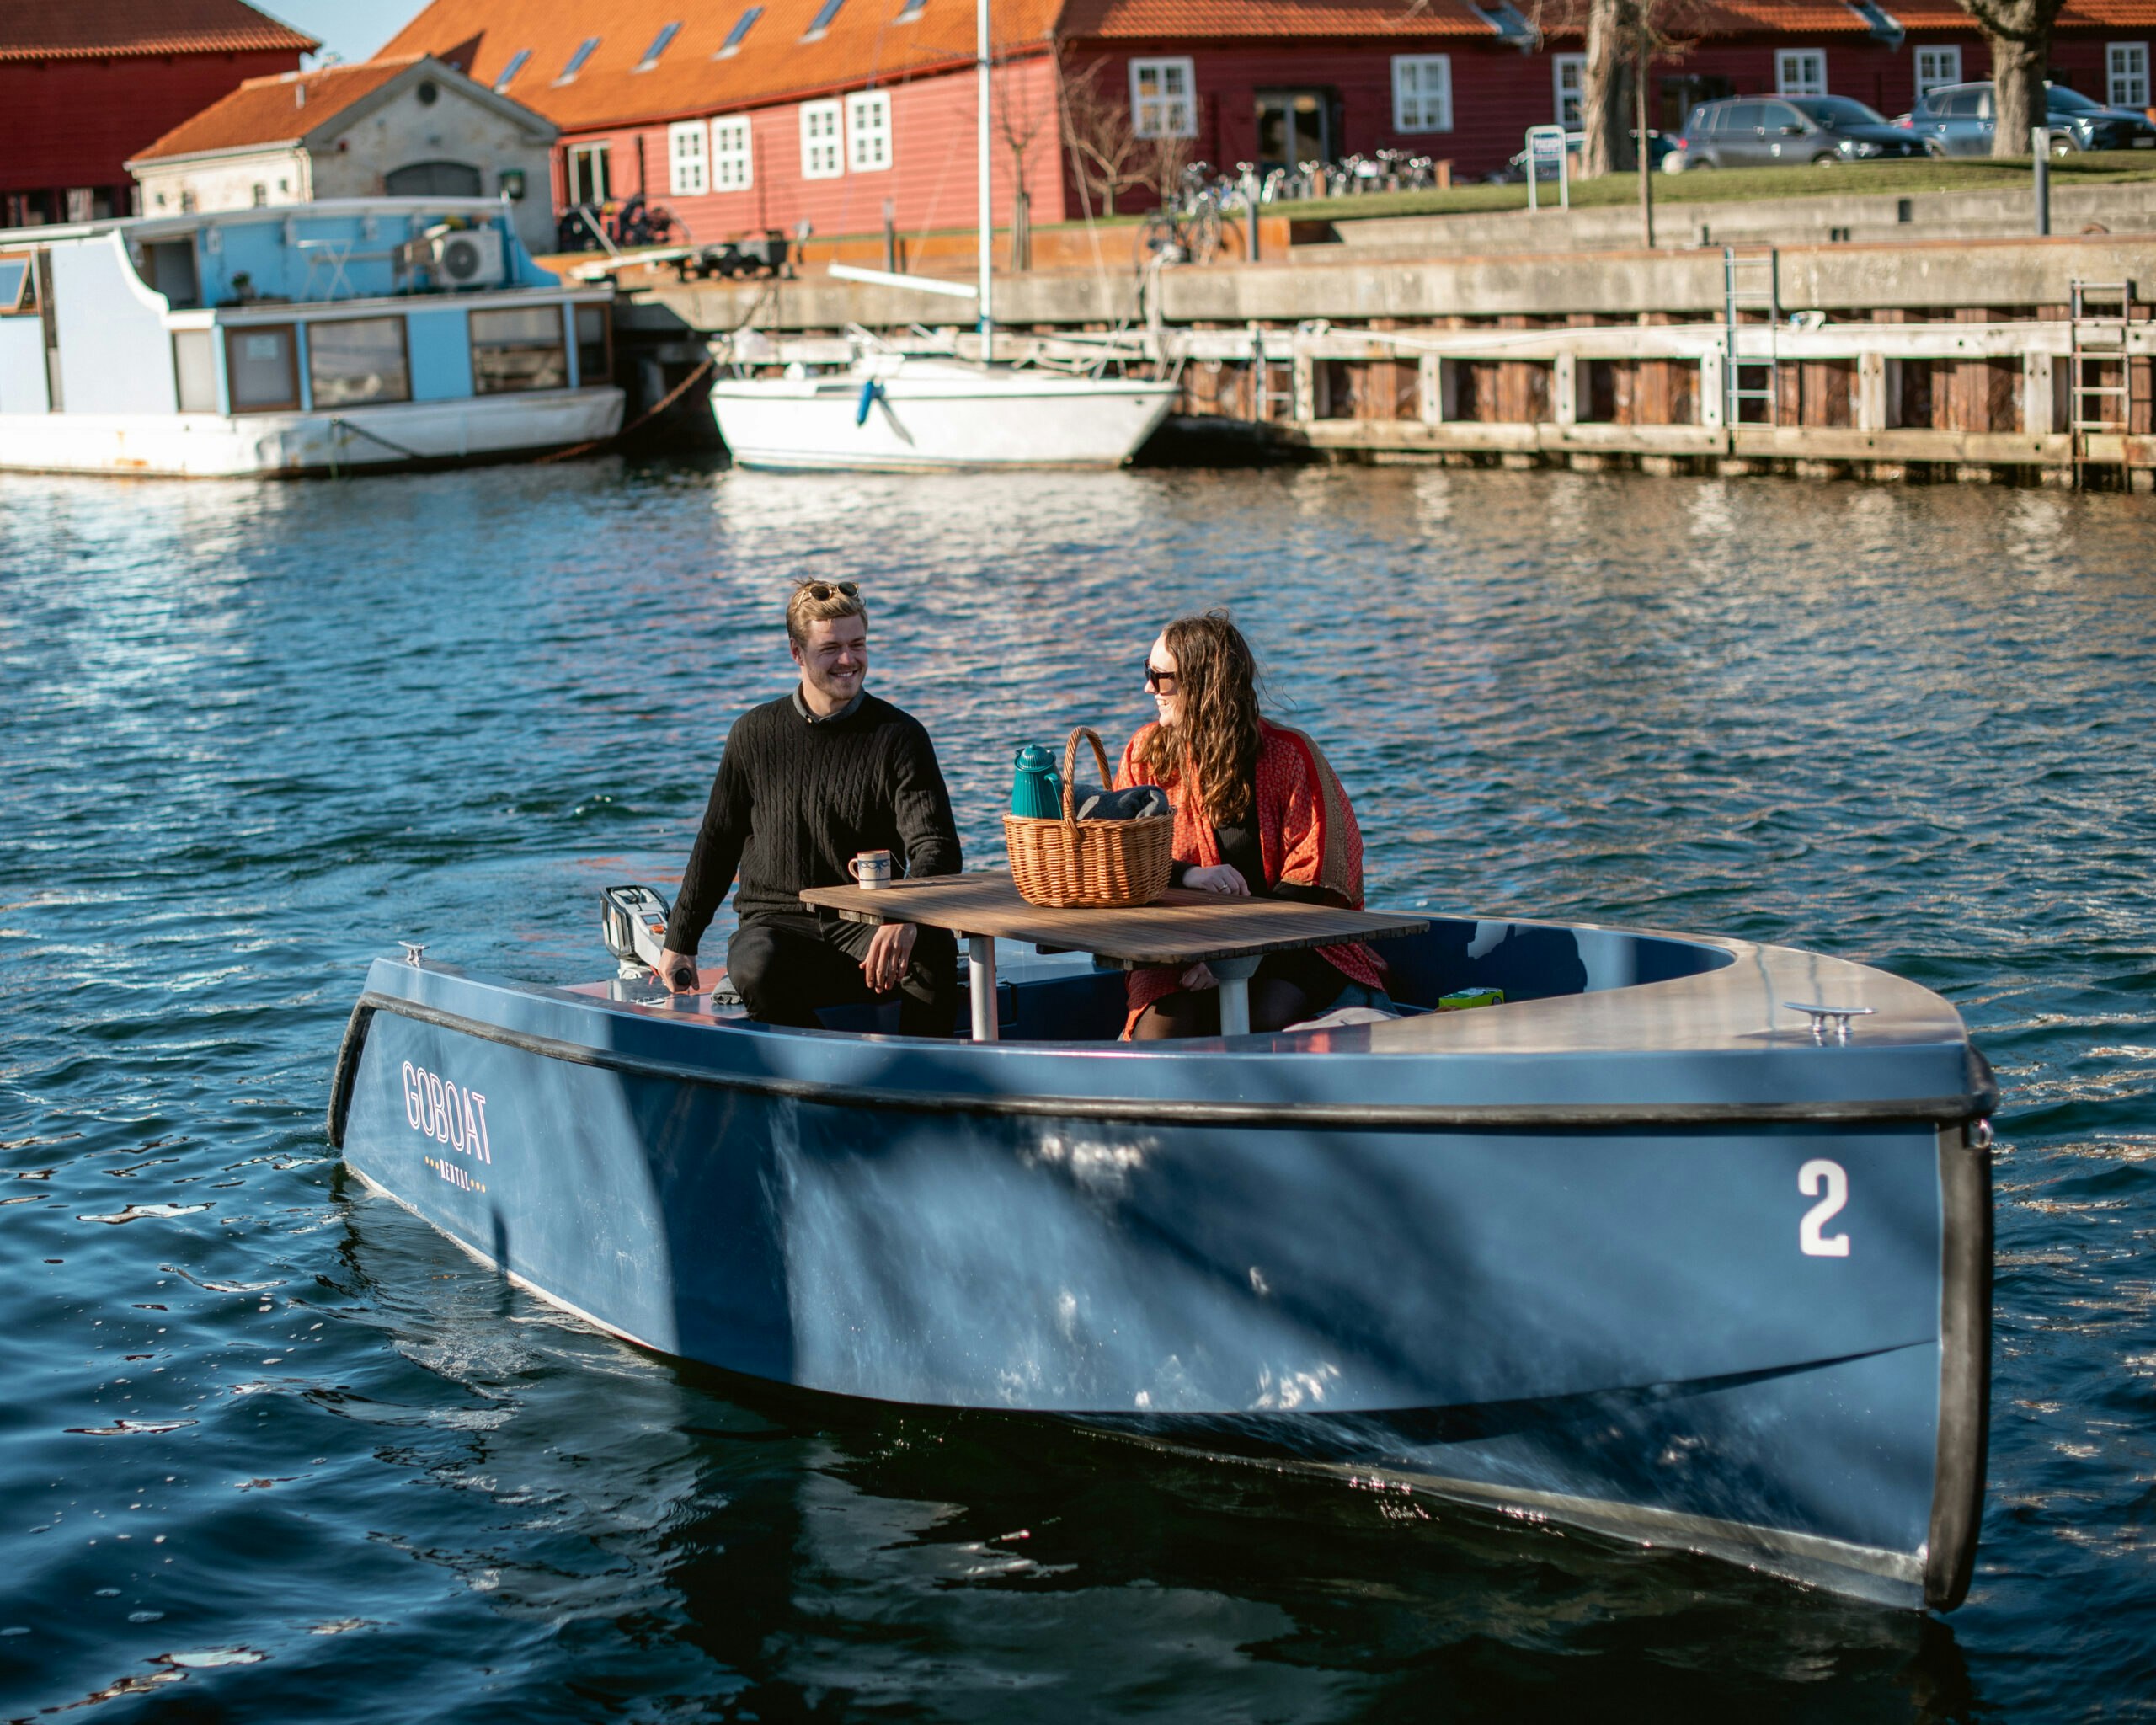 Lej en båd i København